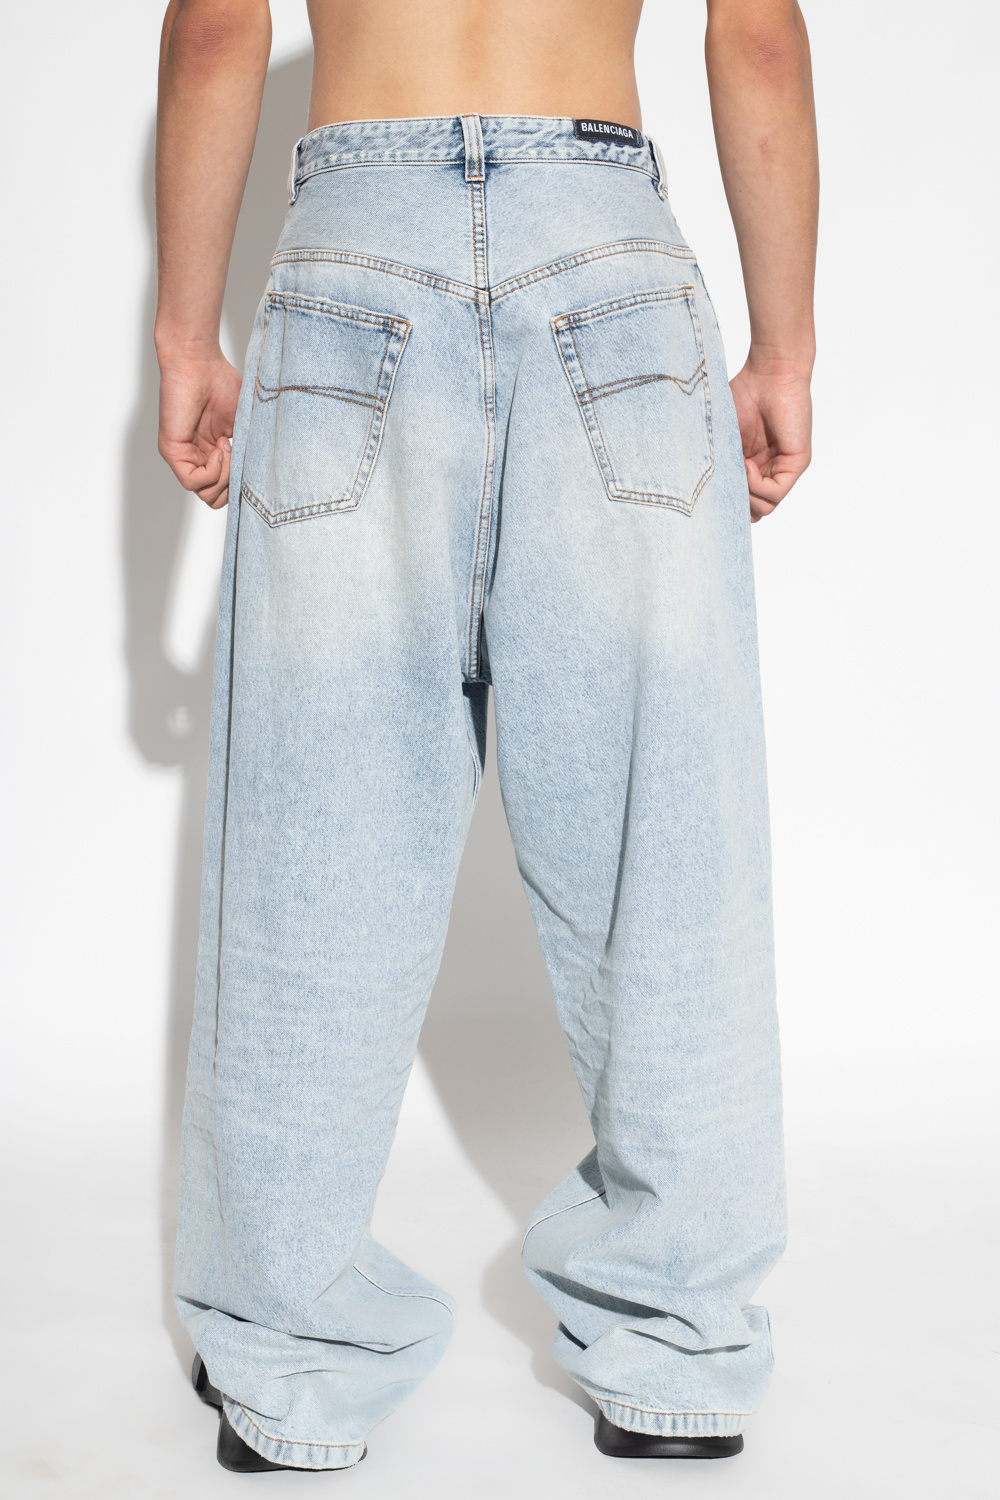 Balenciaga Levis Barrel Womens Jeans